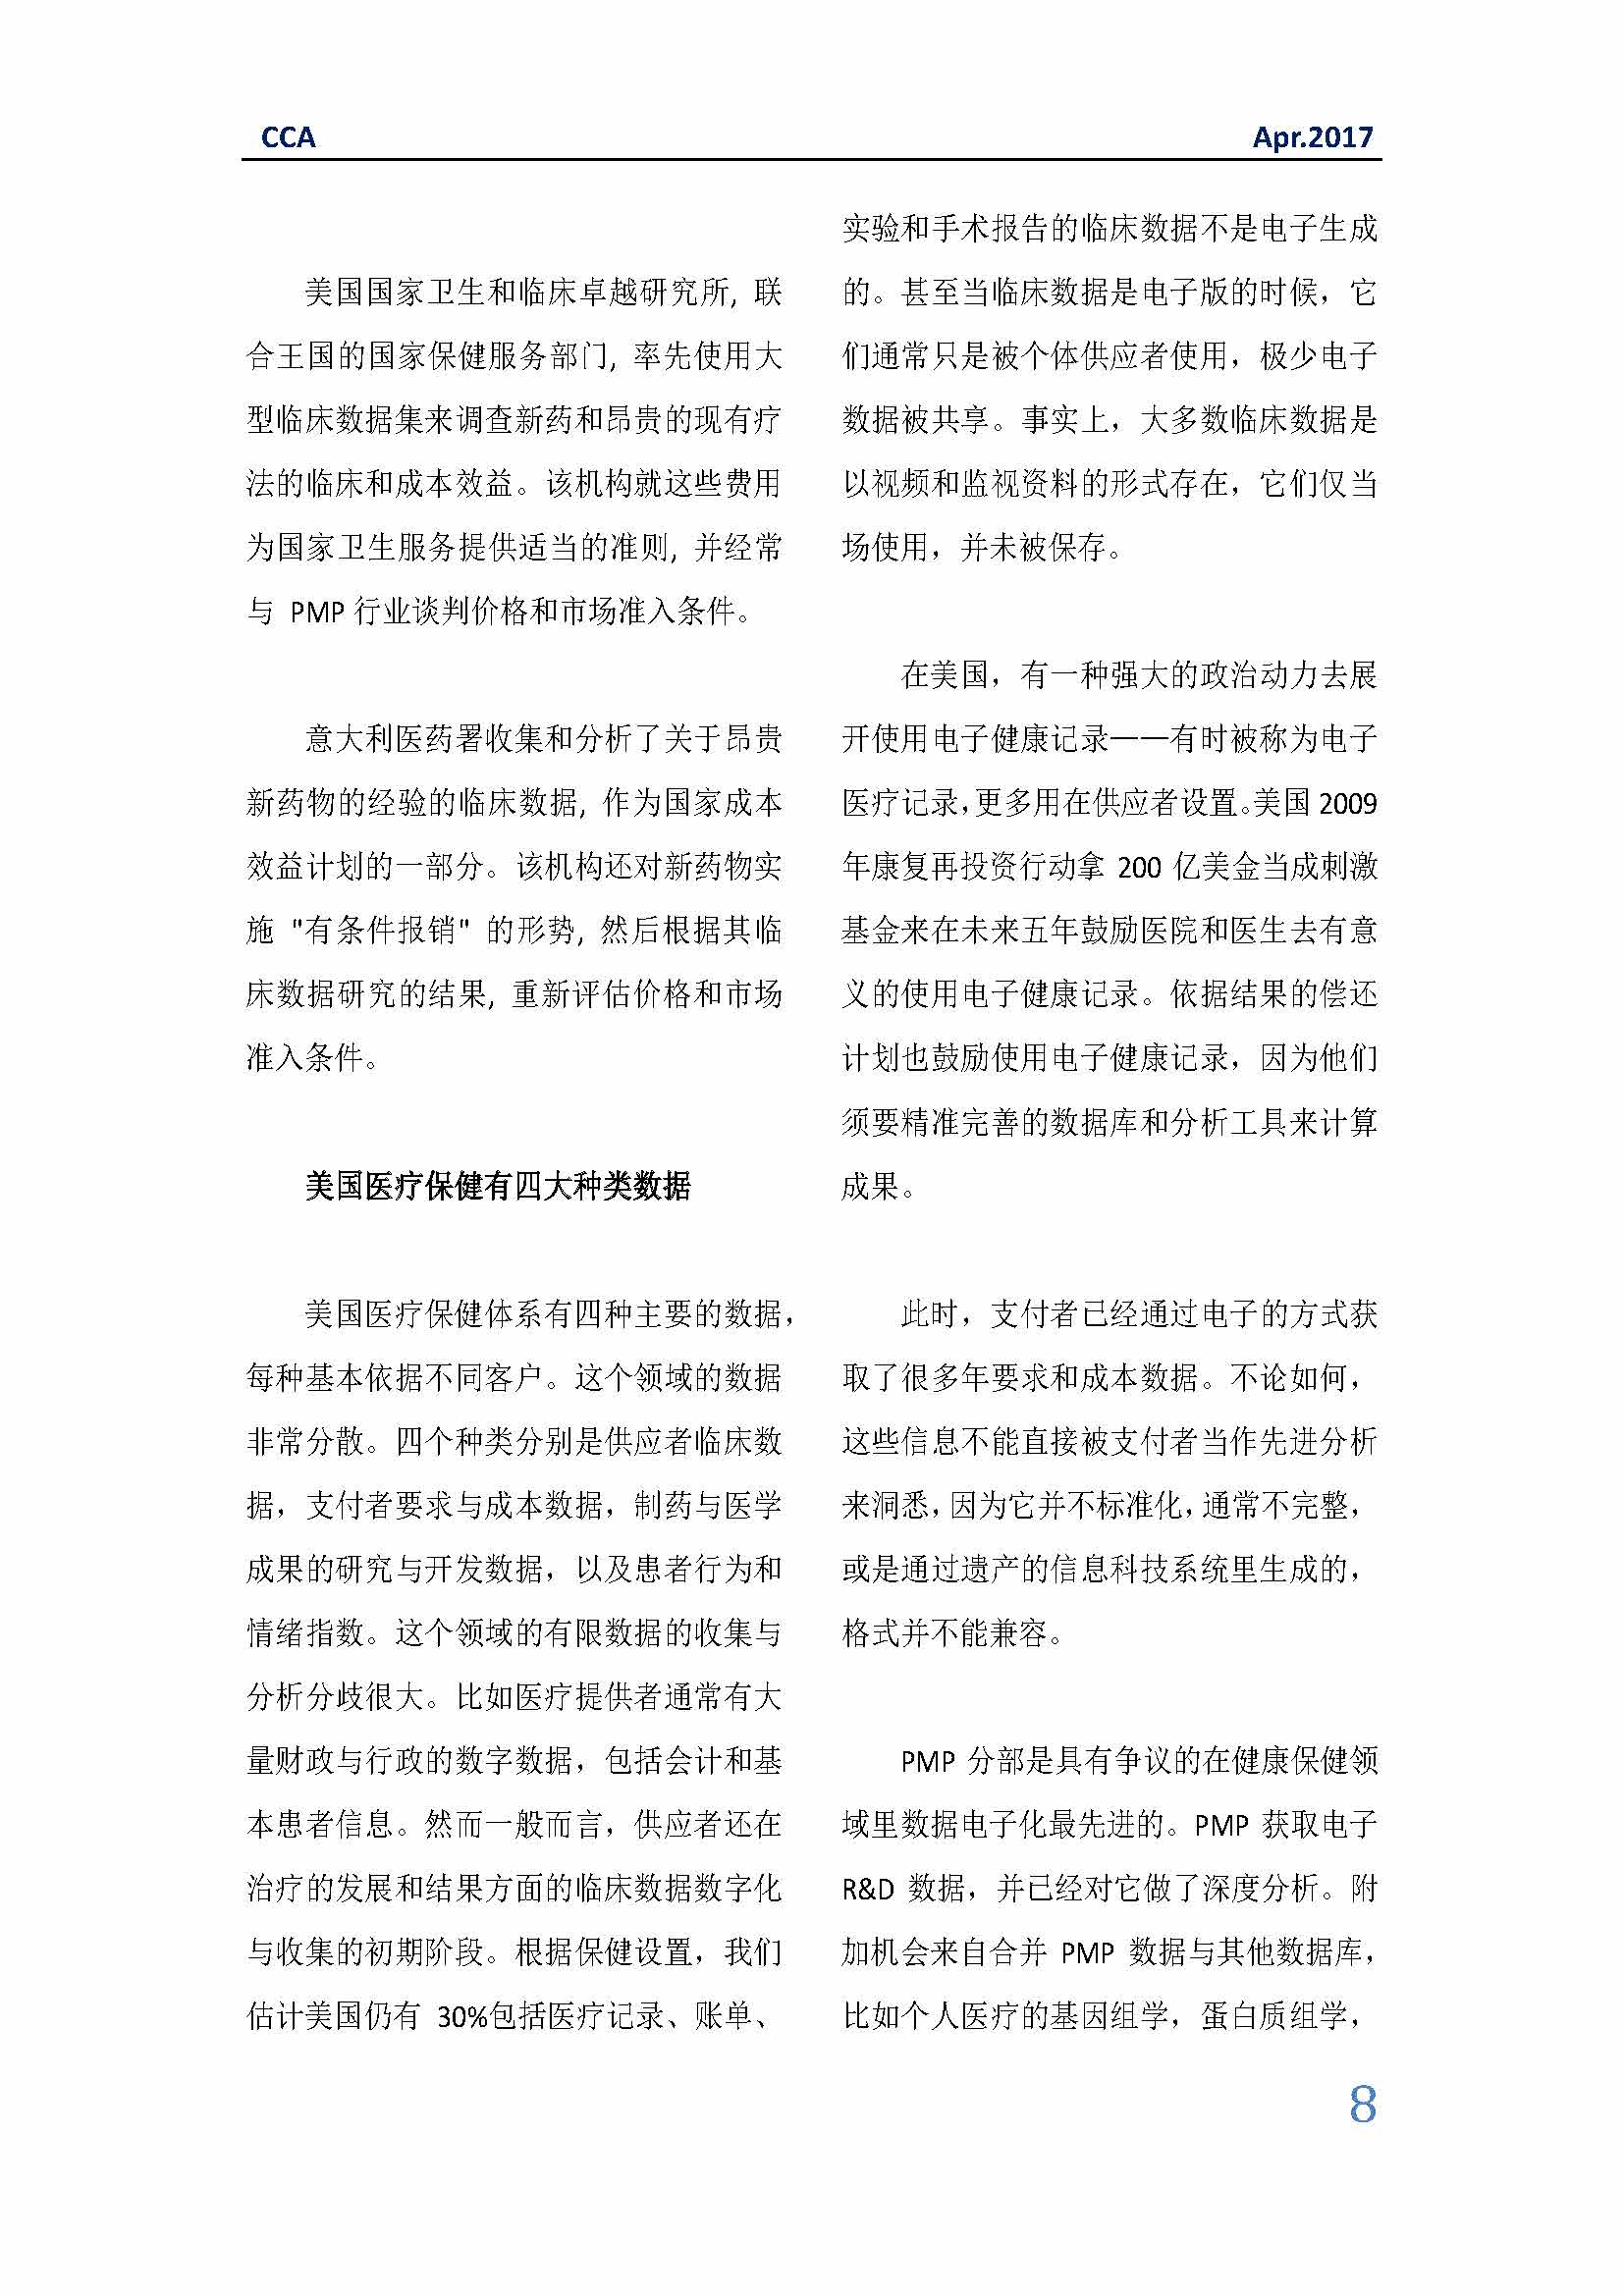 中国科技咨询协会国际快讯（第二十八期）_页面_08.jpg